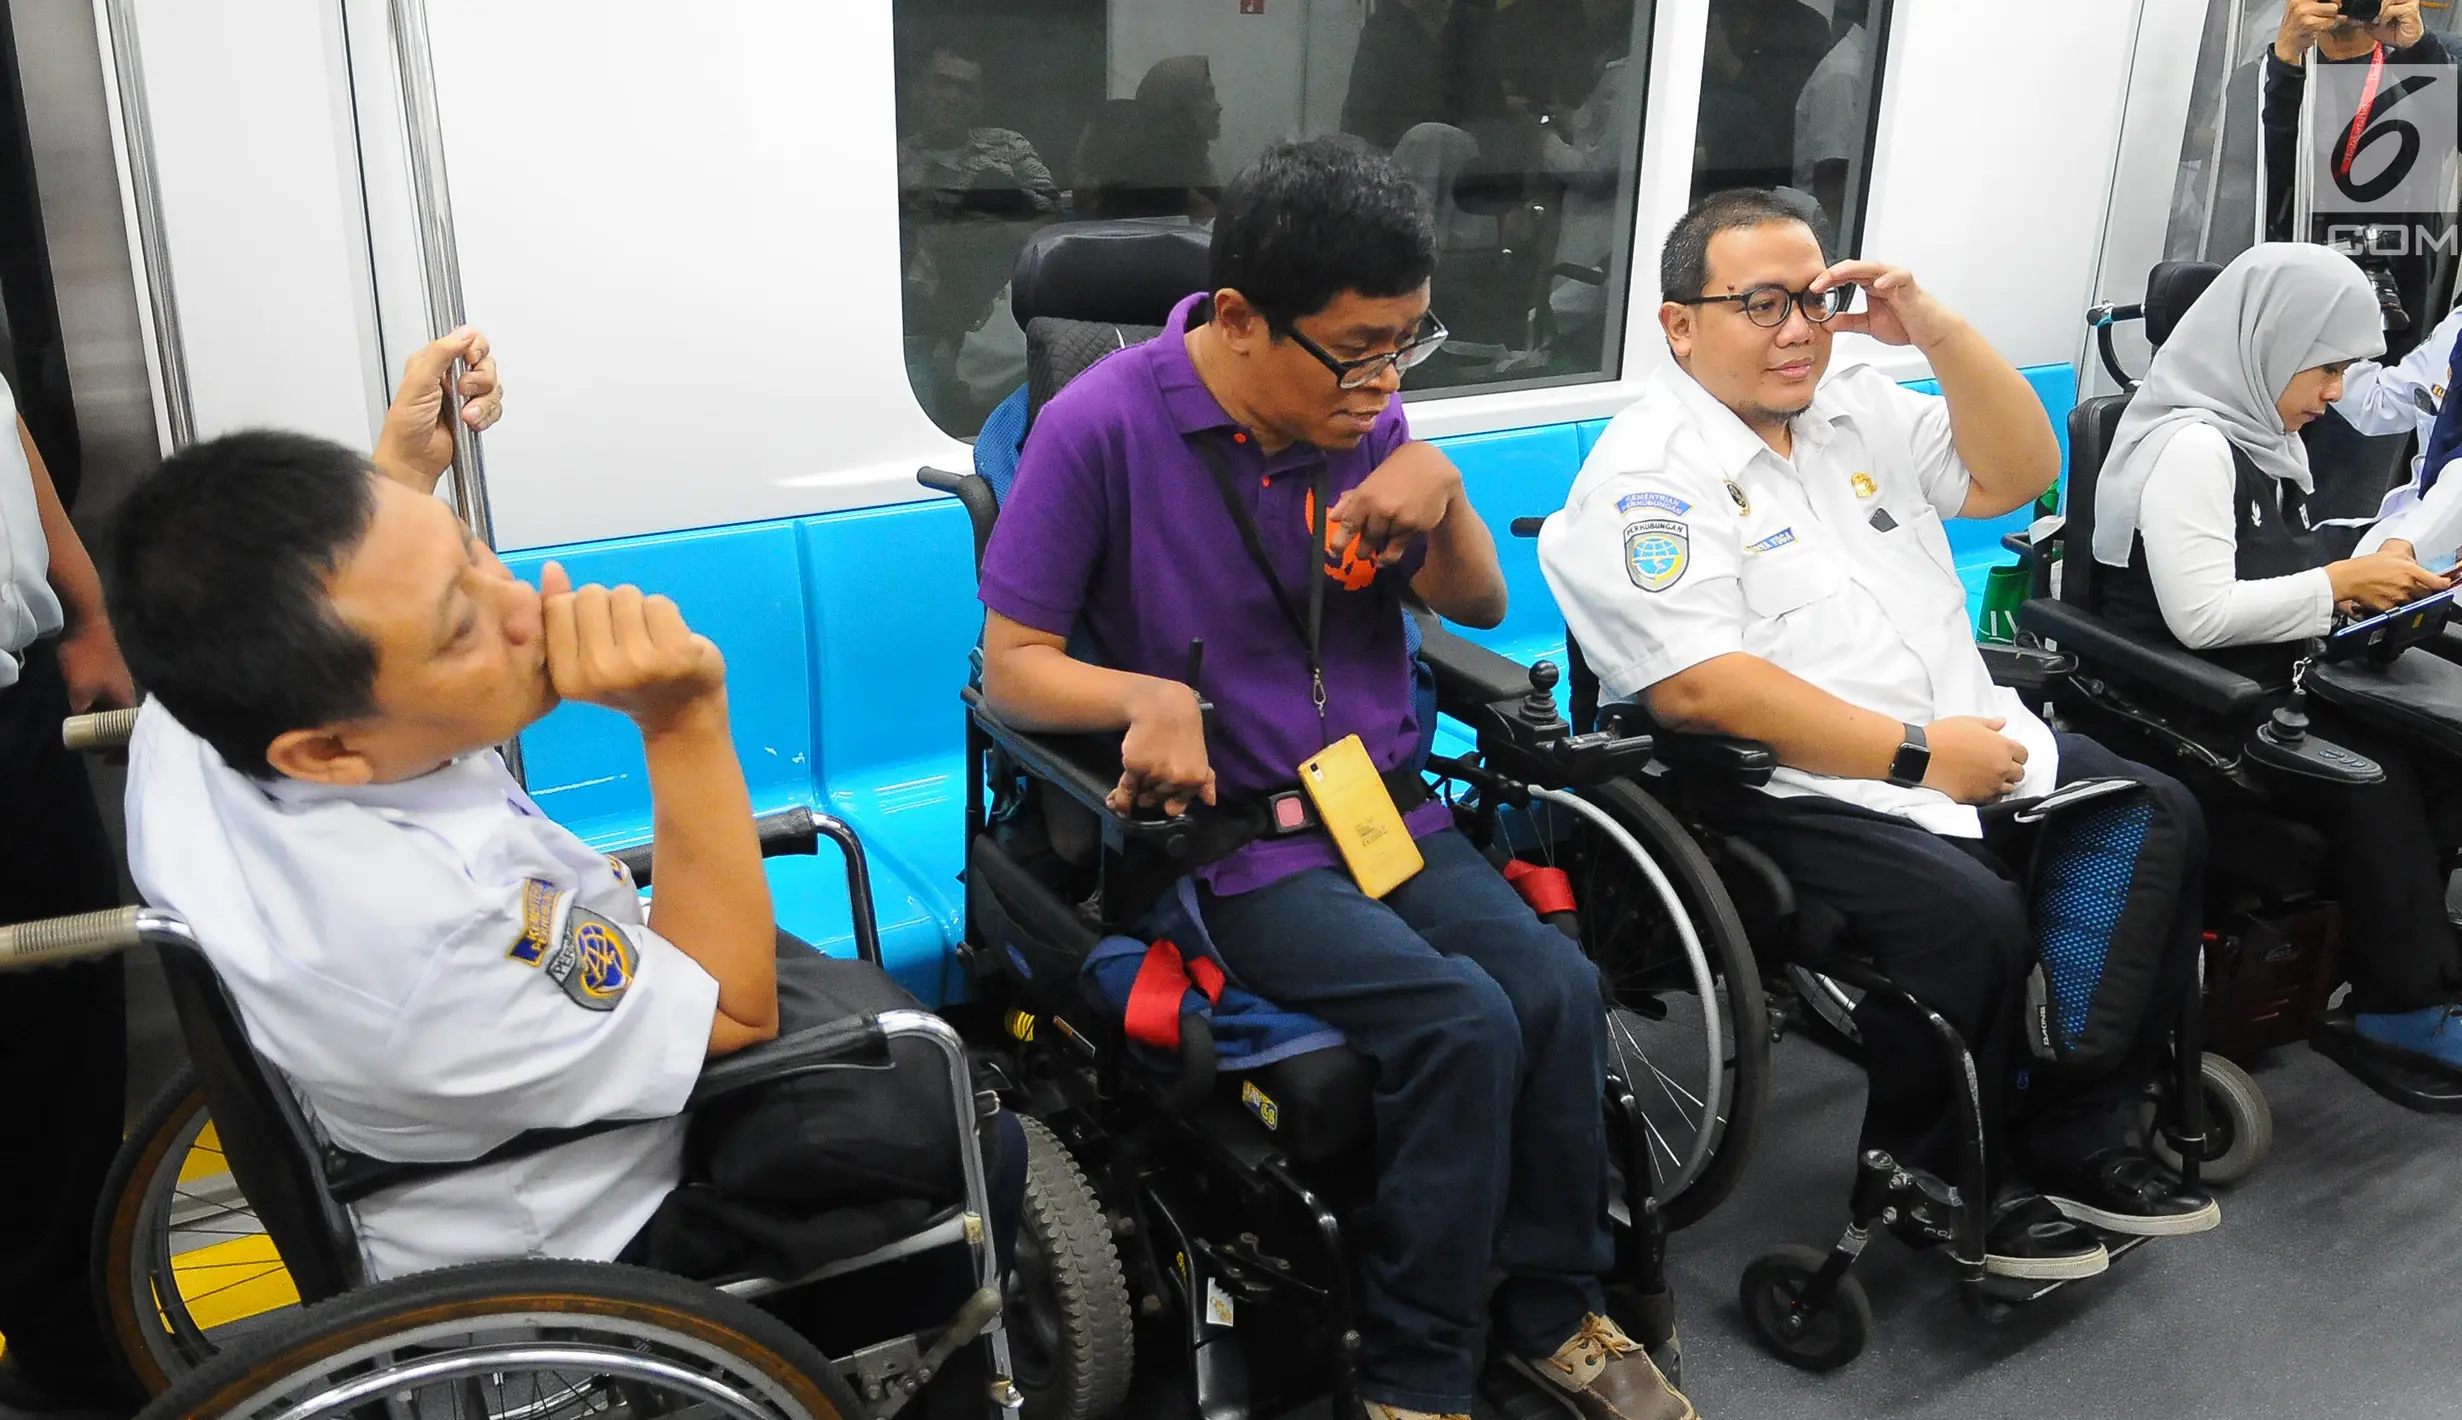 Foto Penyandang Disabilitas Dapat Menikmati Fasilitas Mrt Foto 4018